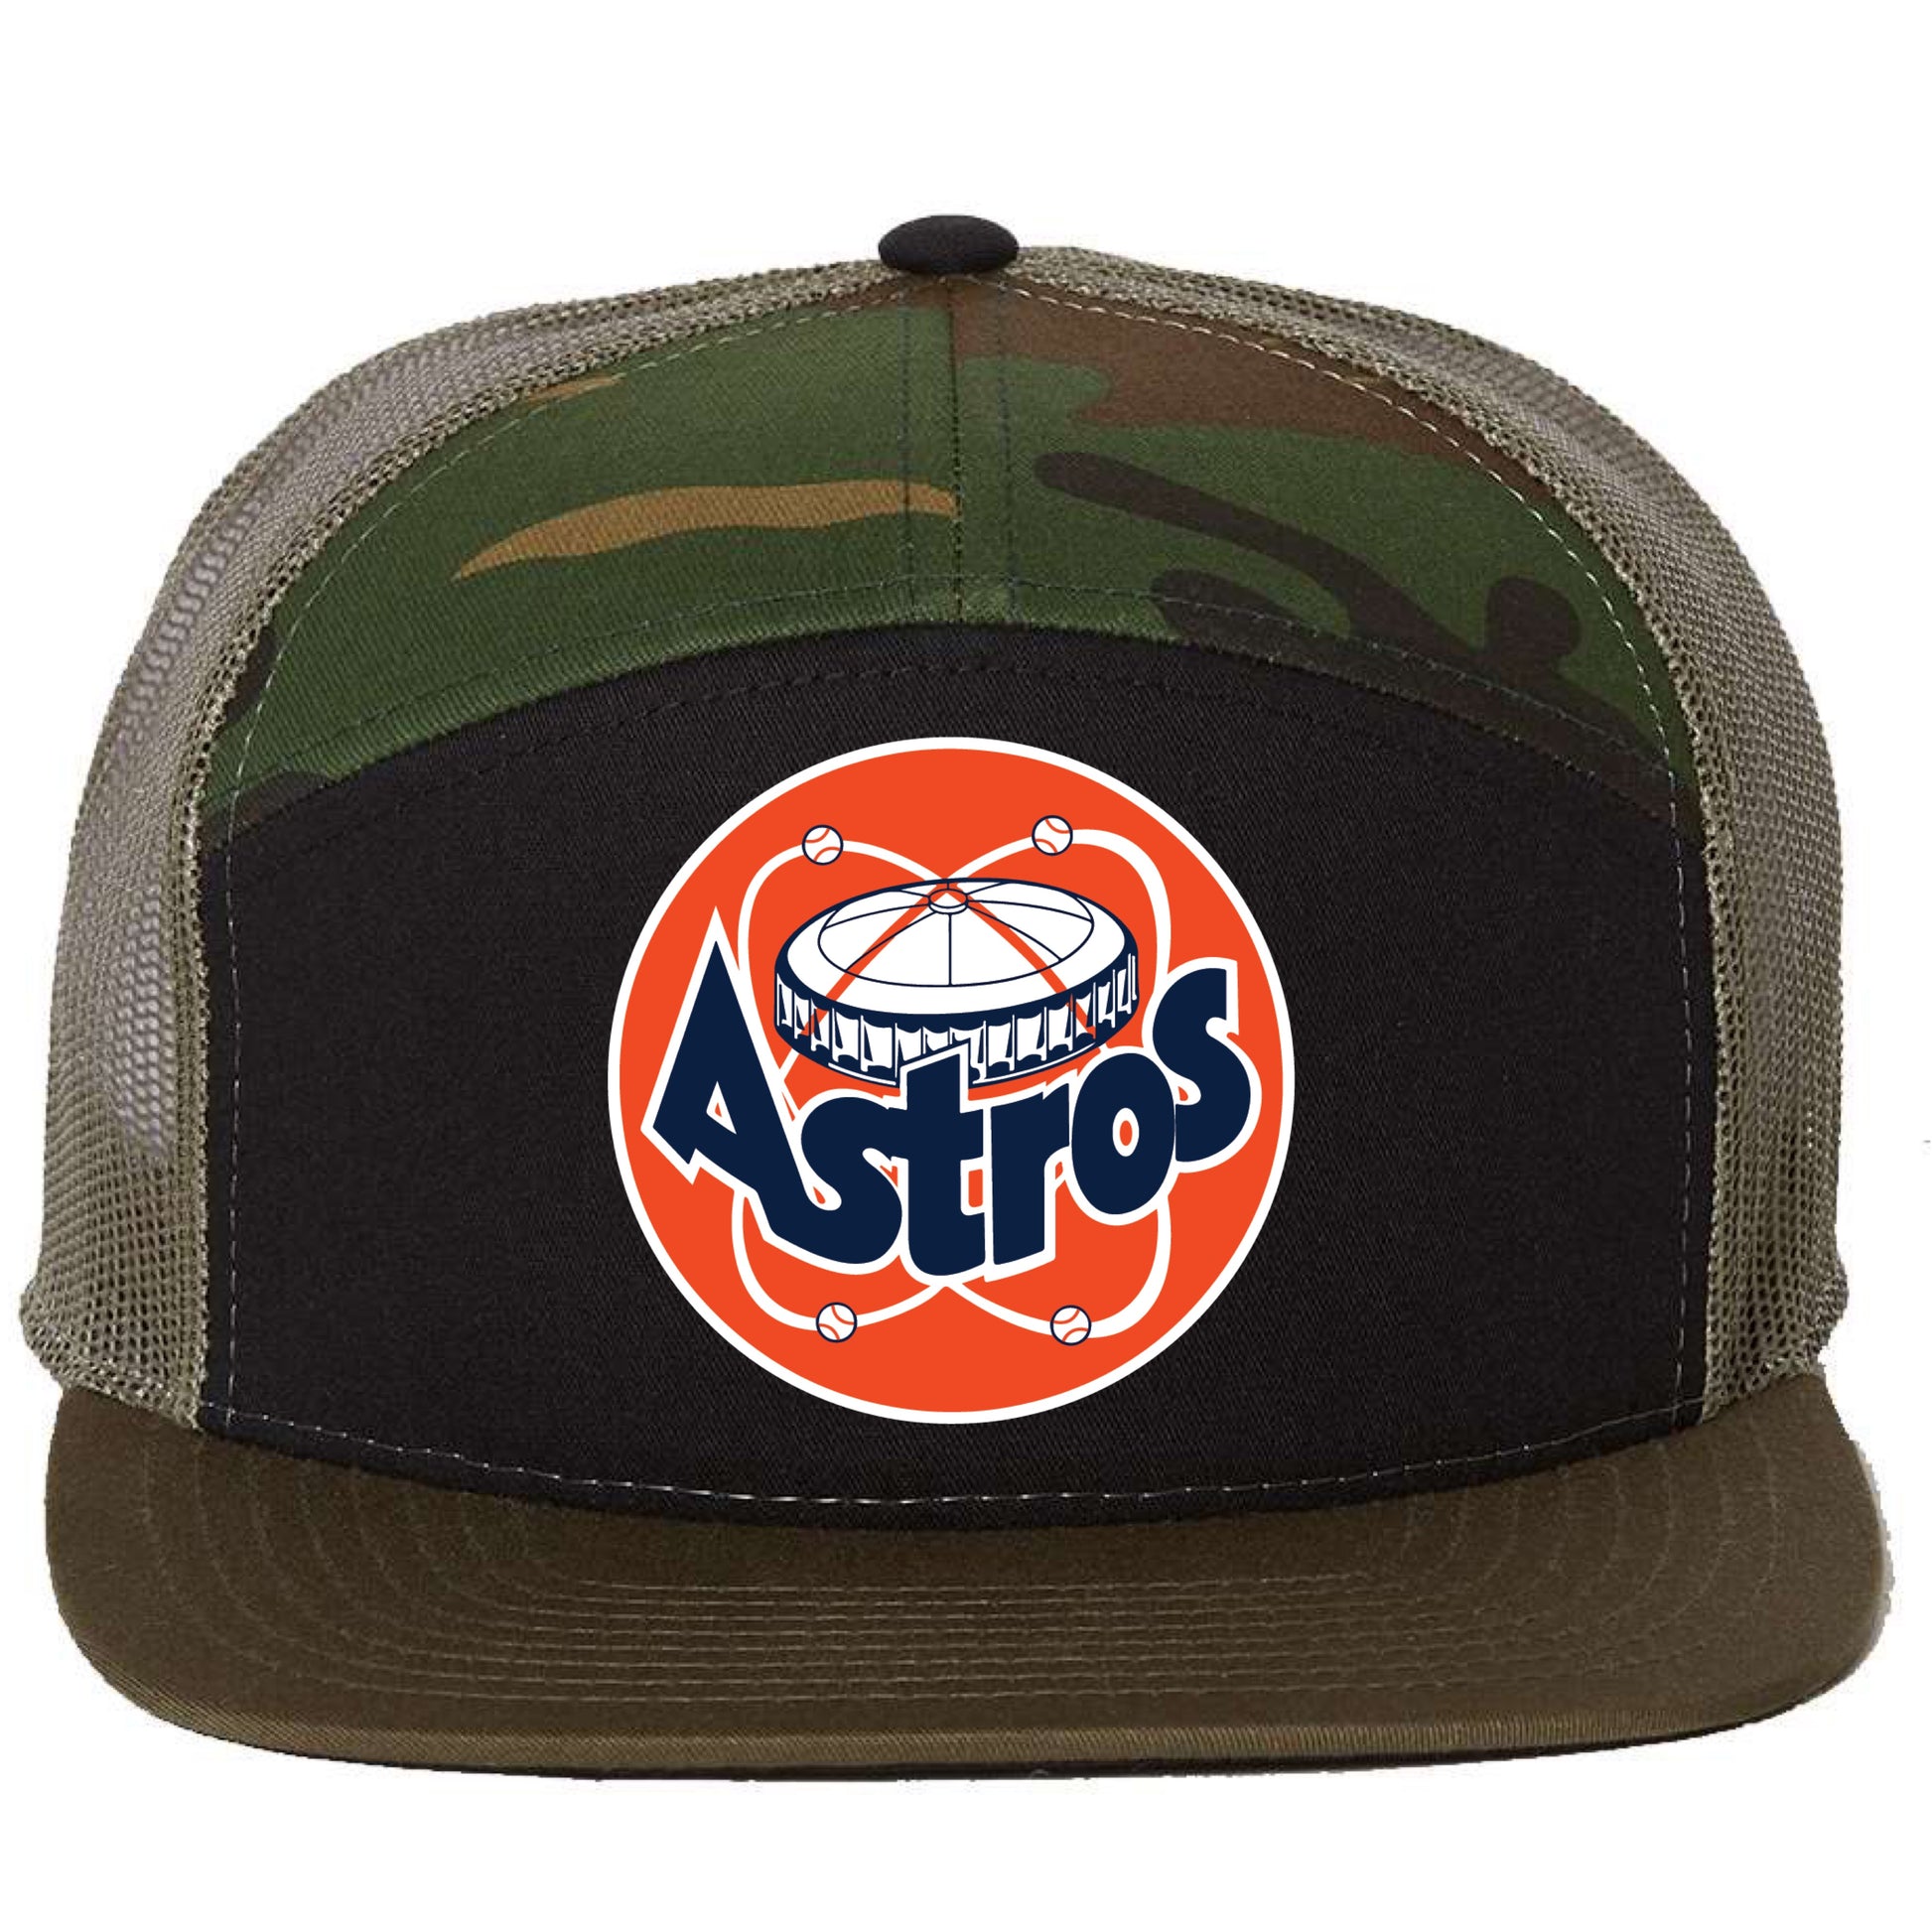 Astros Retro Astrodome 3D Snapback Seven-Panel Trucker Hat- Black/ Camo/ Loden - Ten Gallon Hat Co.